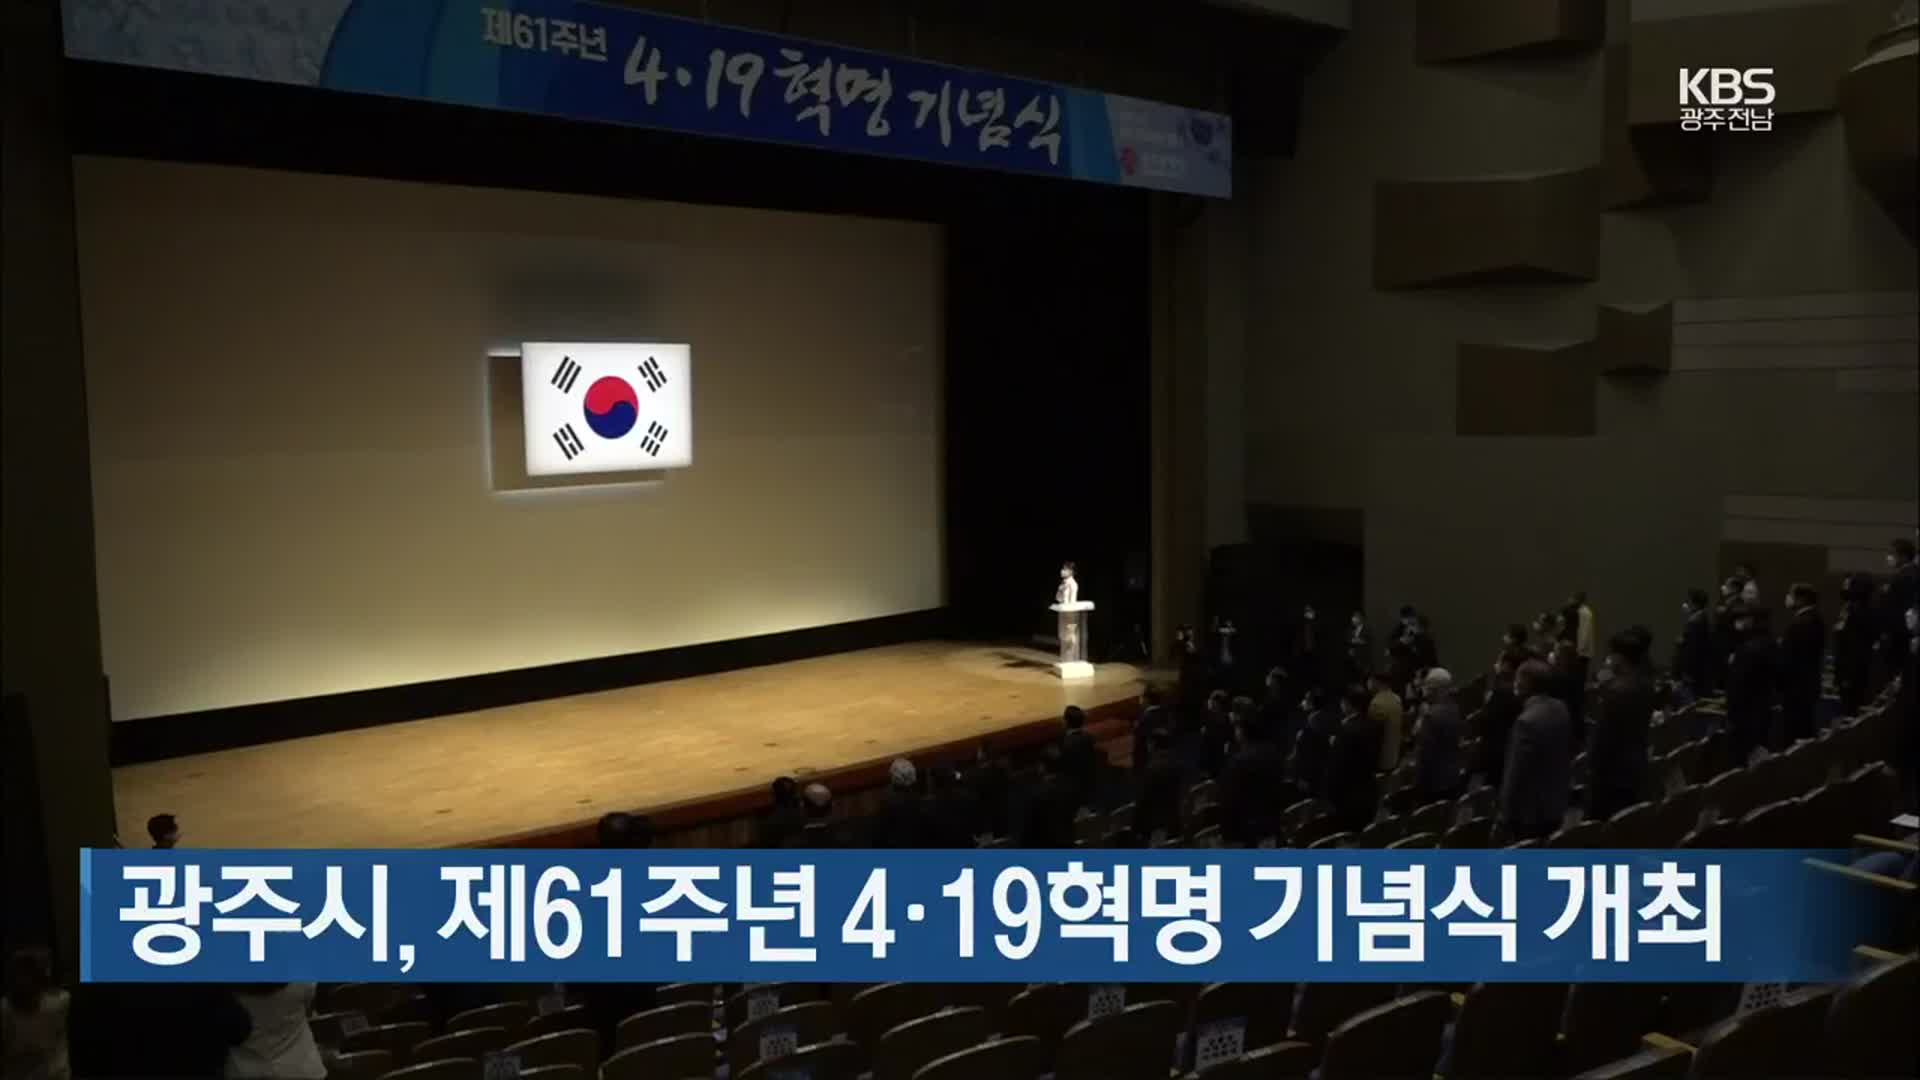 [간추린 뉴스] 광주시, 제61주년 4·19혁명 기념식 개최 외